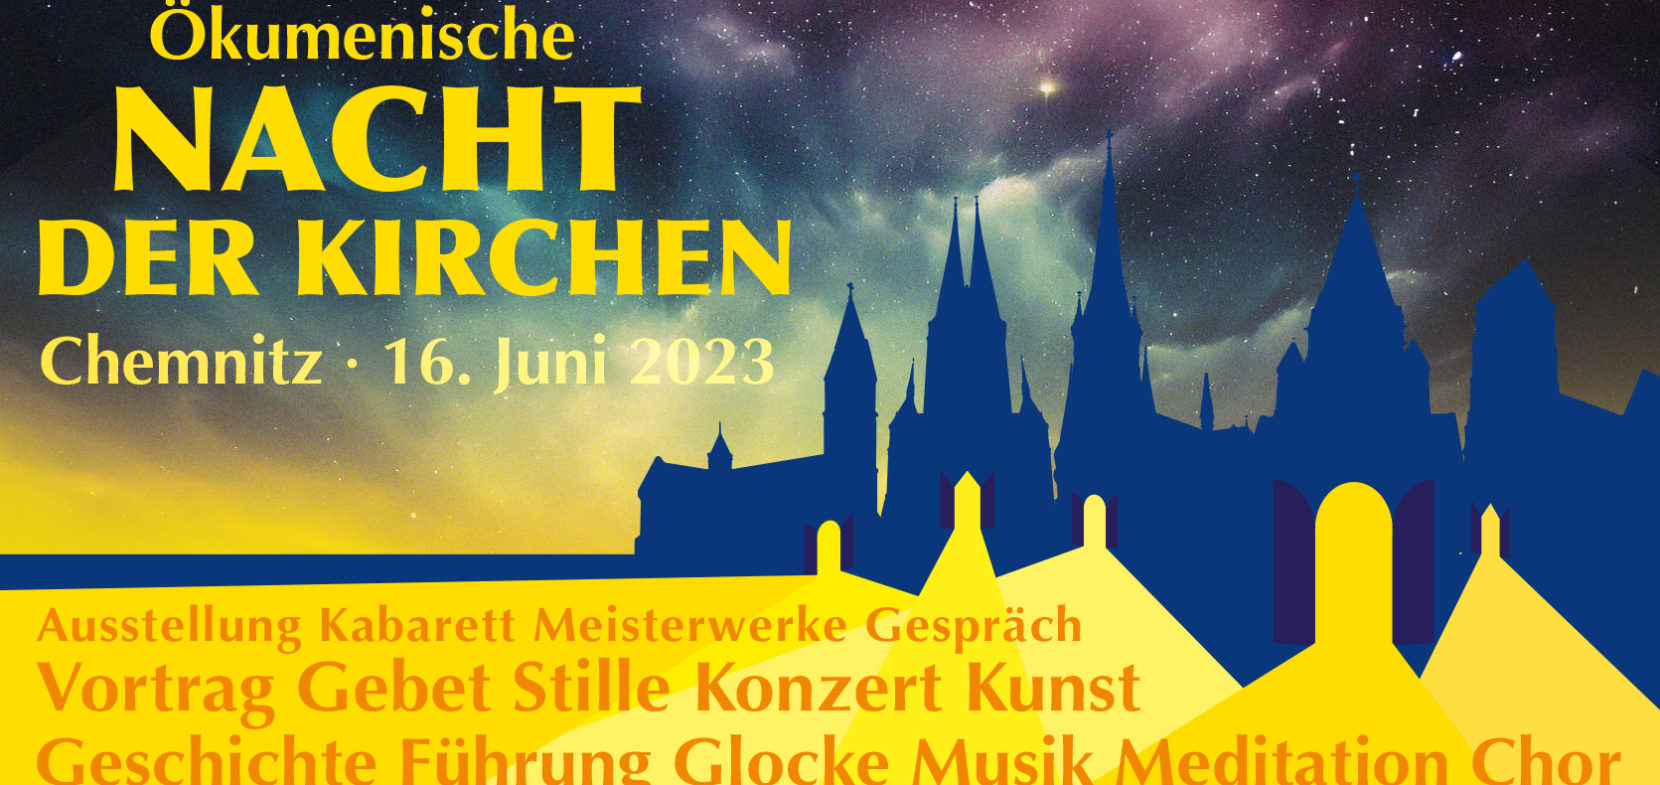 Ökumenische Nacht der Kirchen 2023